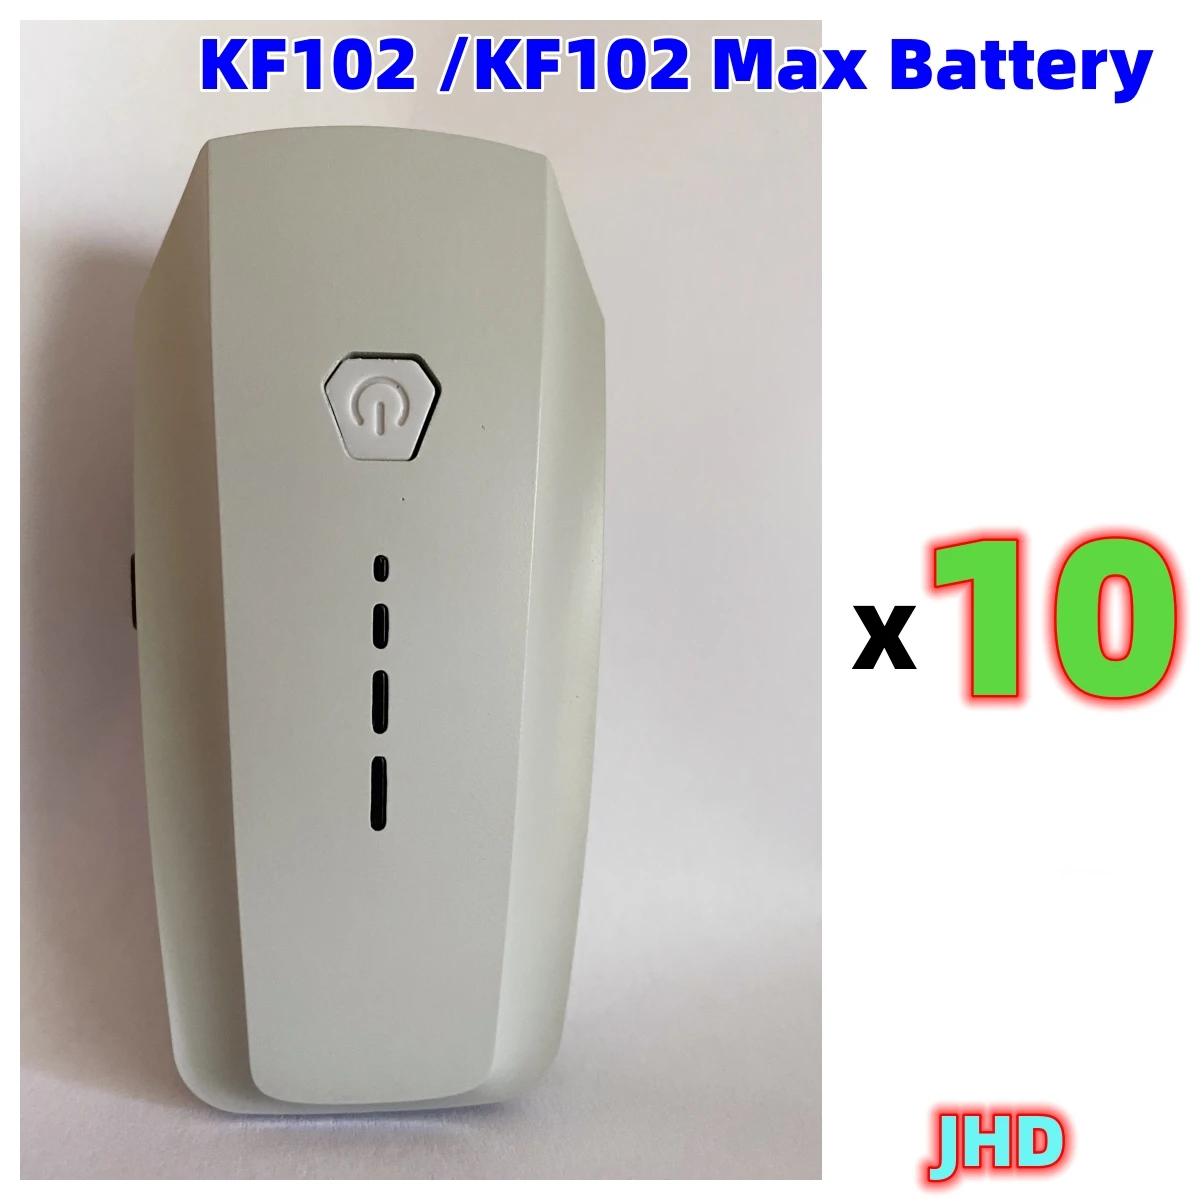 JHD me Shumicë KF102 MAX Baterisë Portokalli Për KF102 Rri 7.4 V 2200mAh Origjinale Rri kot e Baterisë KF102 MAX Pajisje Pjesë . ' - ' . 4